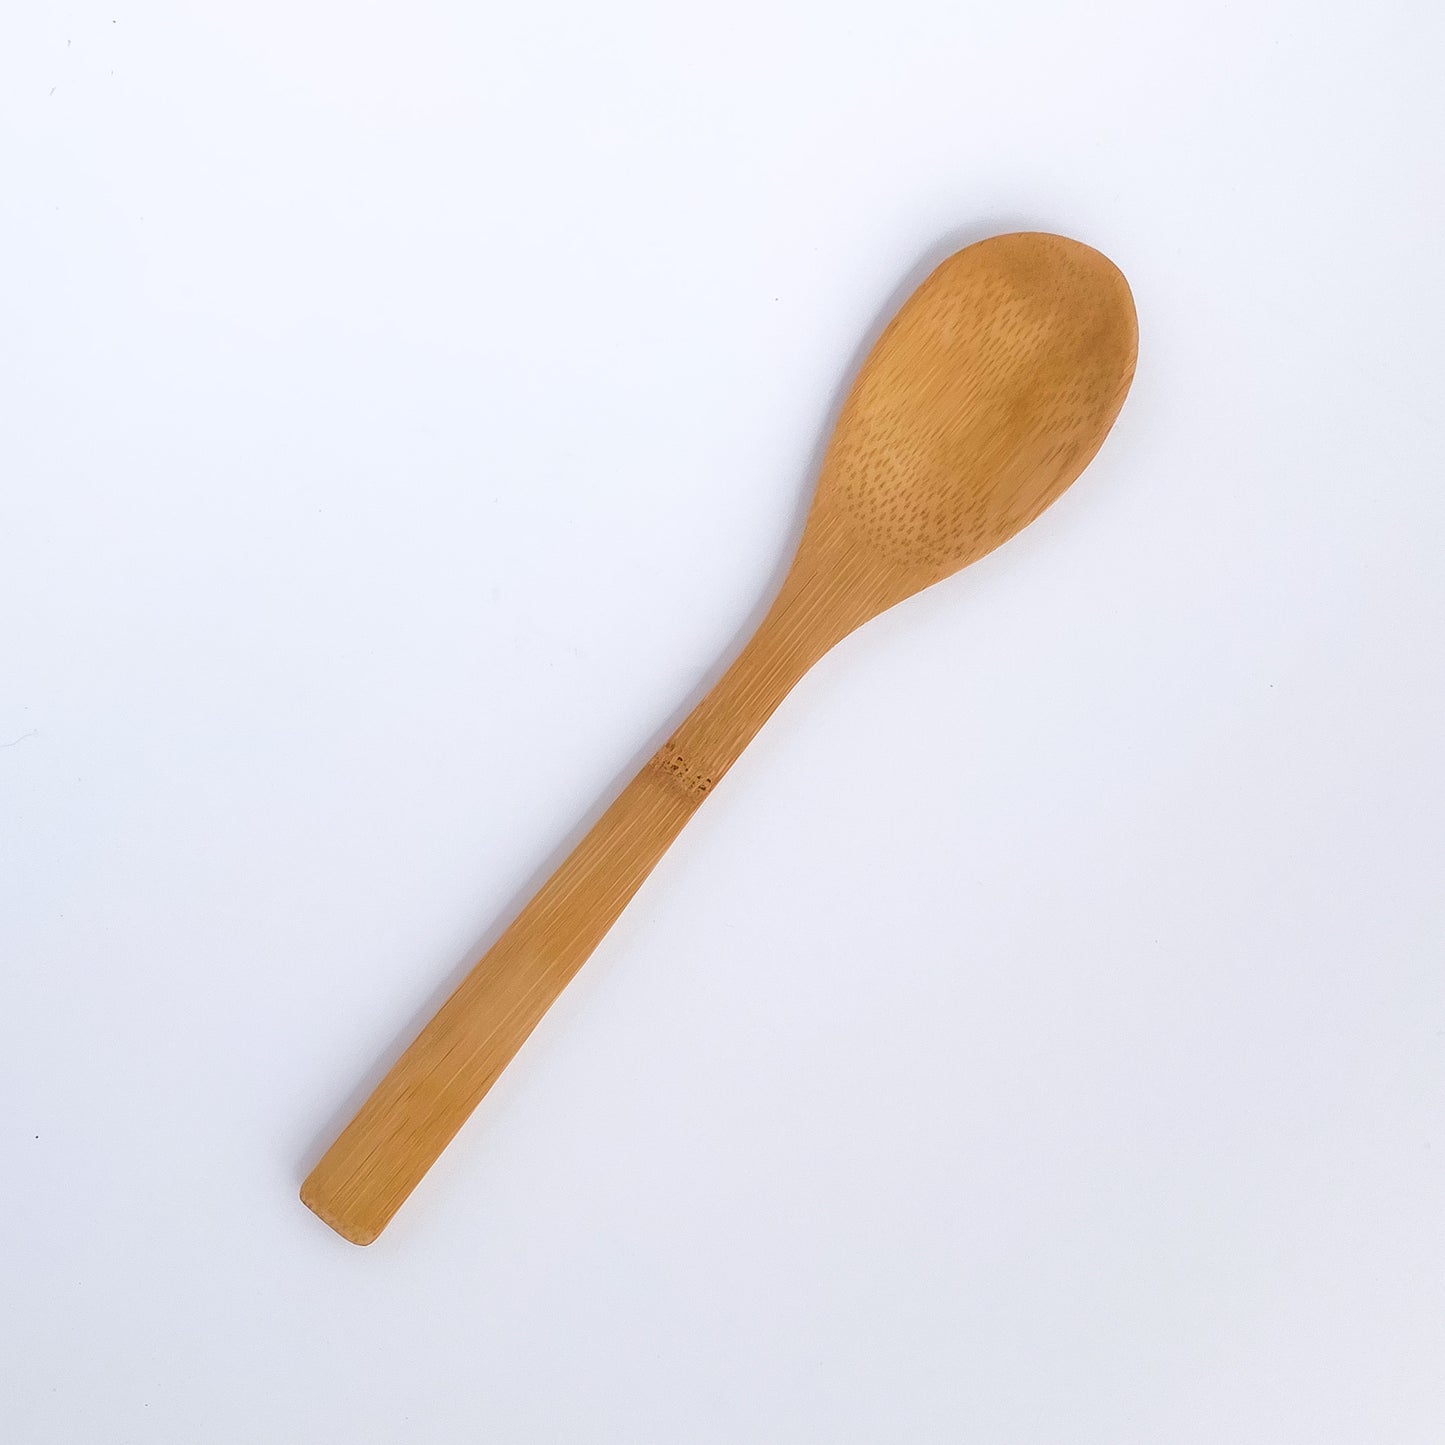 Utensilios bambú: tenedor, cuchillo y cuchara - La Tortuga y La Liebre